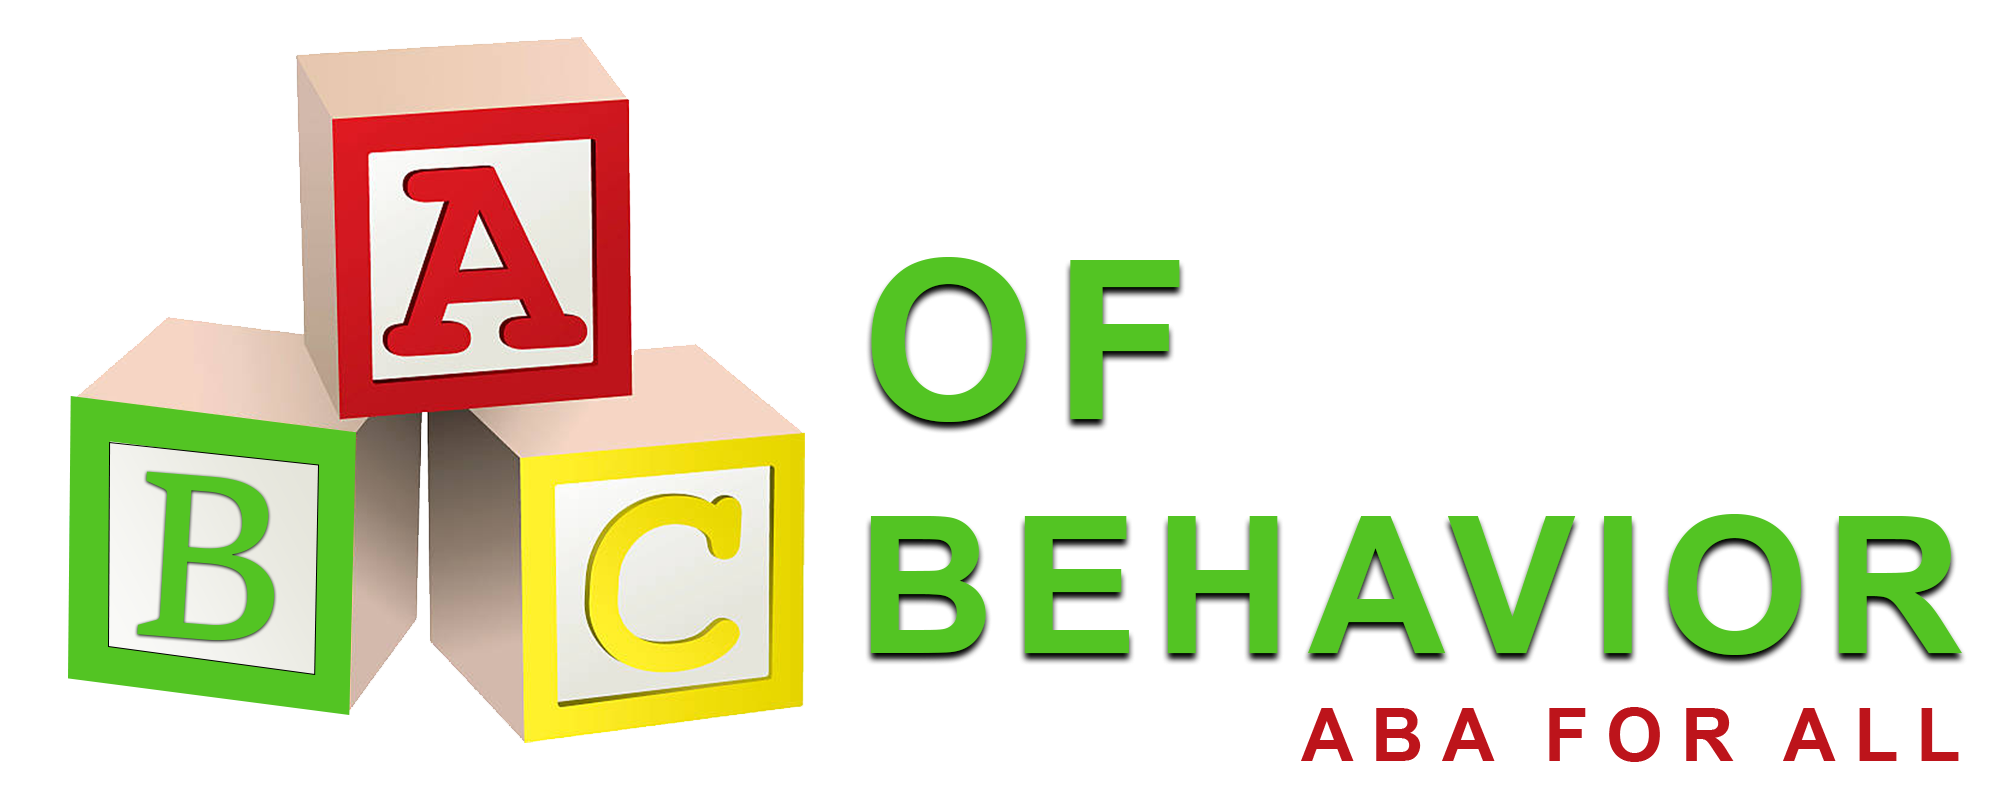 ABC Of Behavior